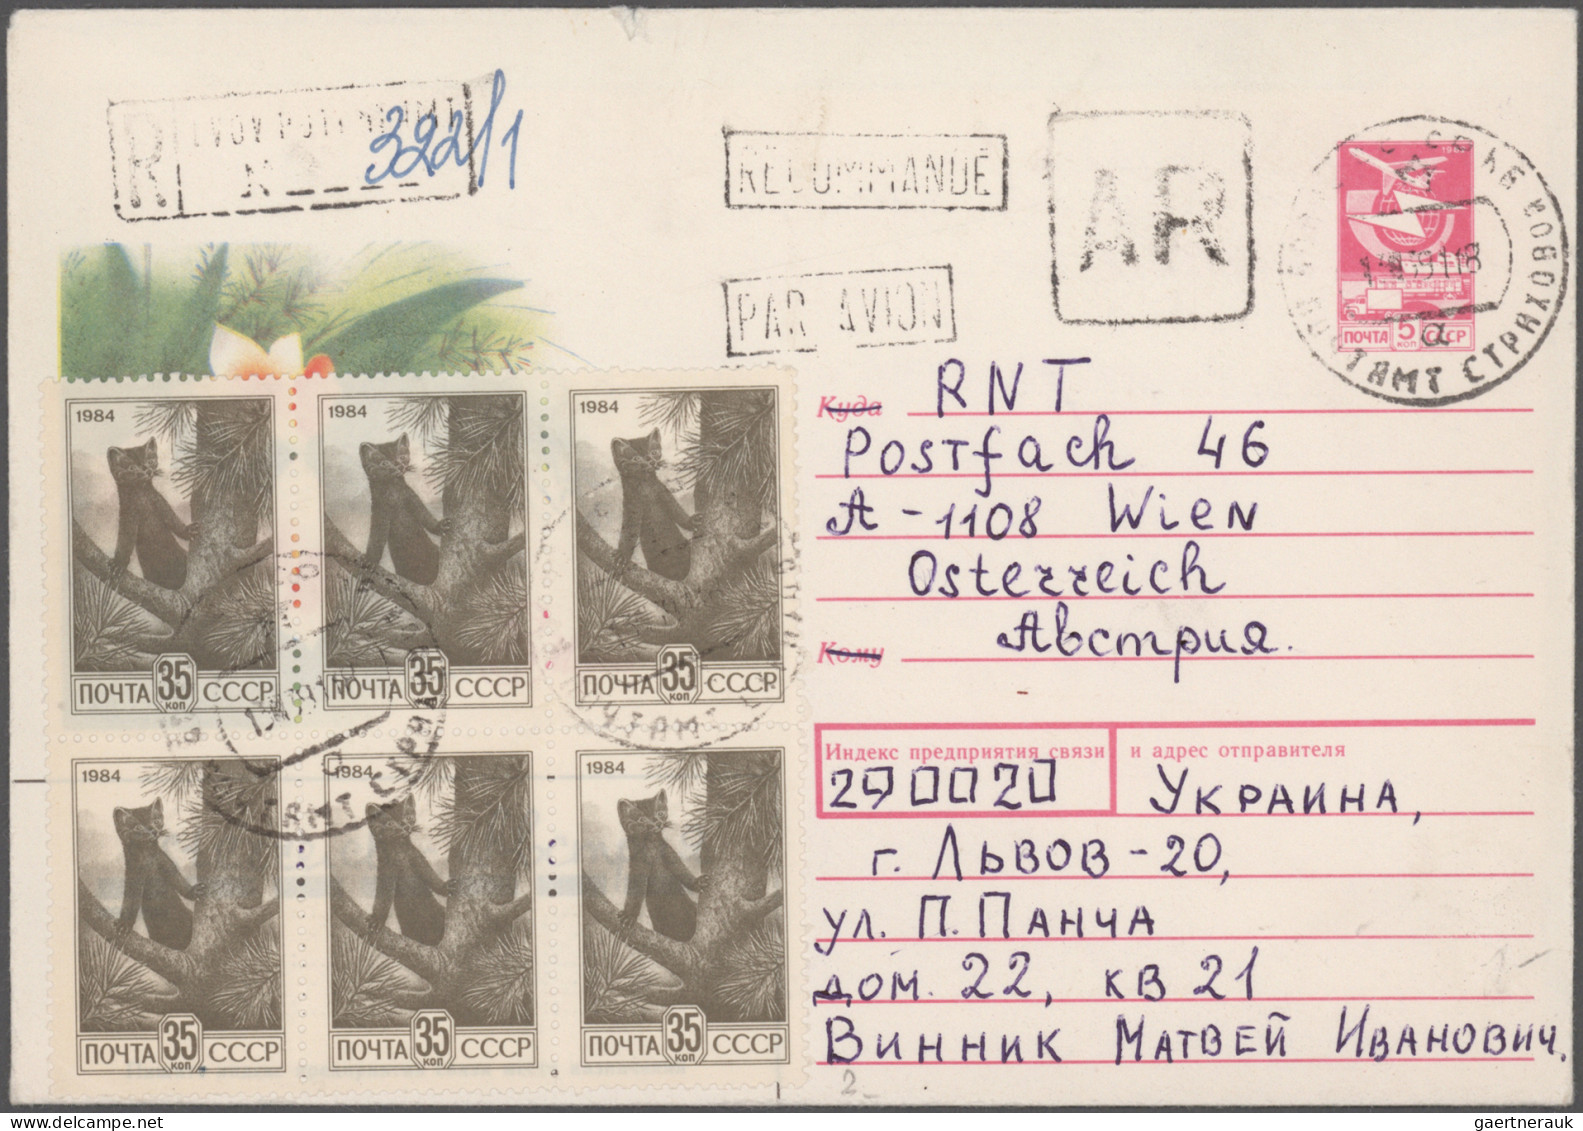 Sowjet Union - Postal Stationery: 1960/1996 (ca.), mainly 1990s, balance of appr